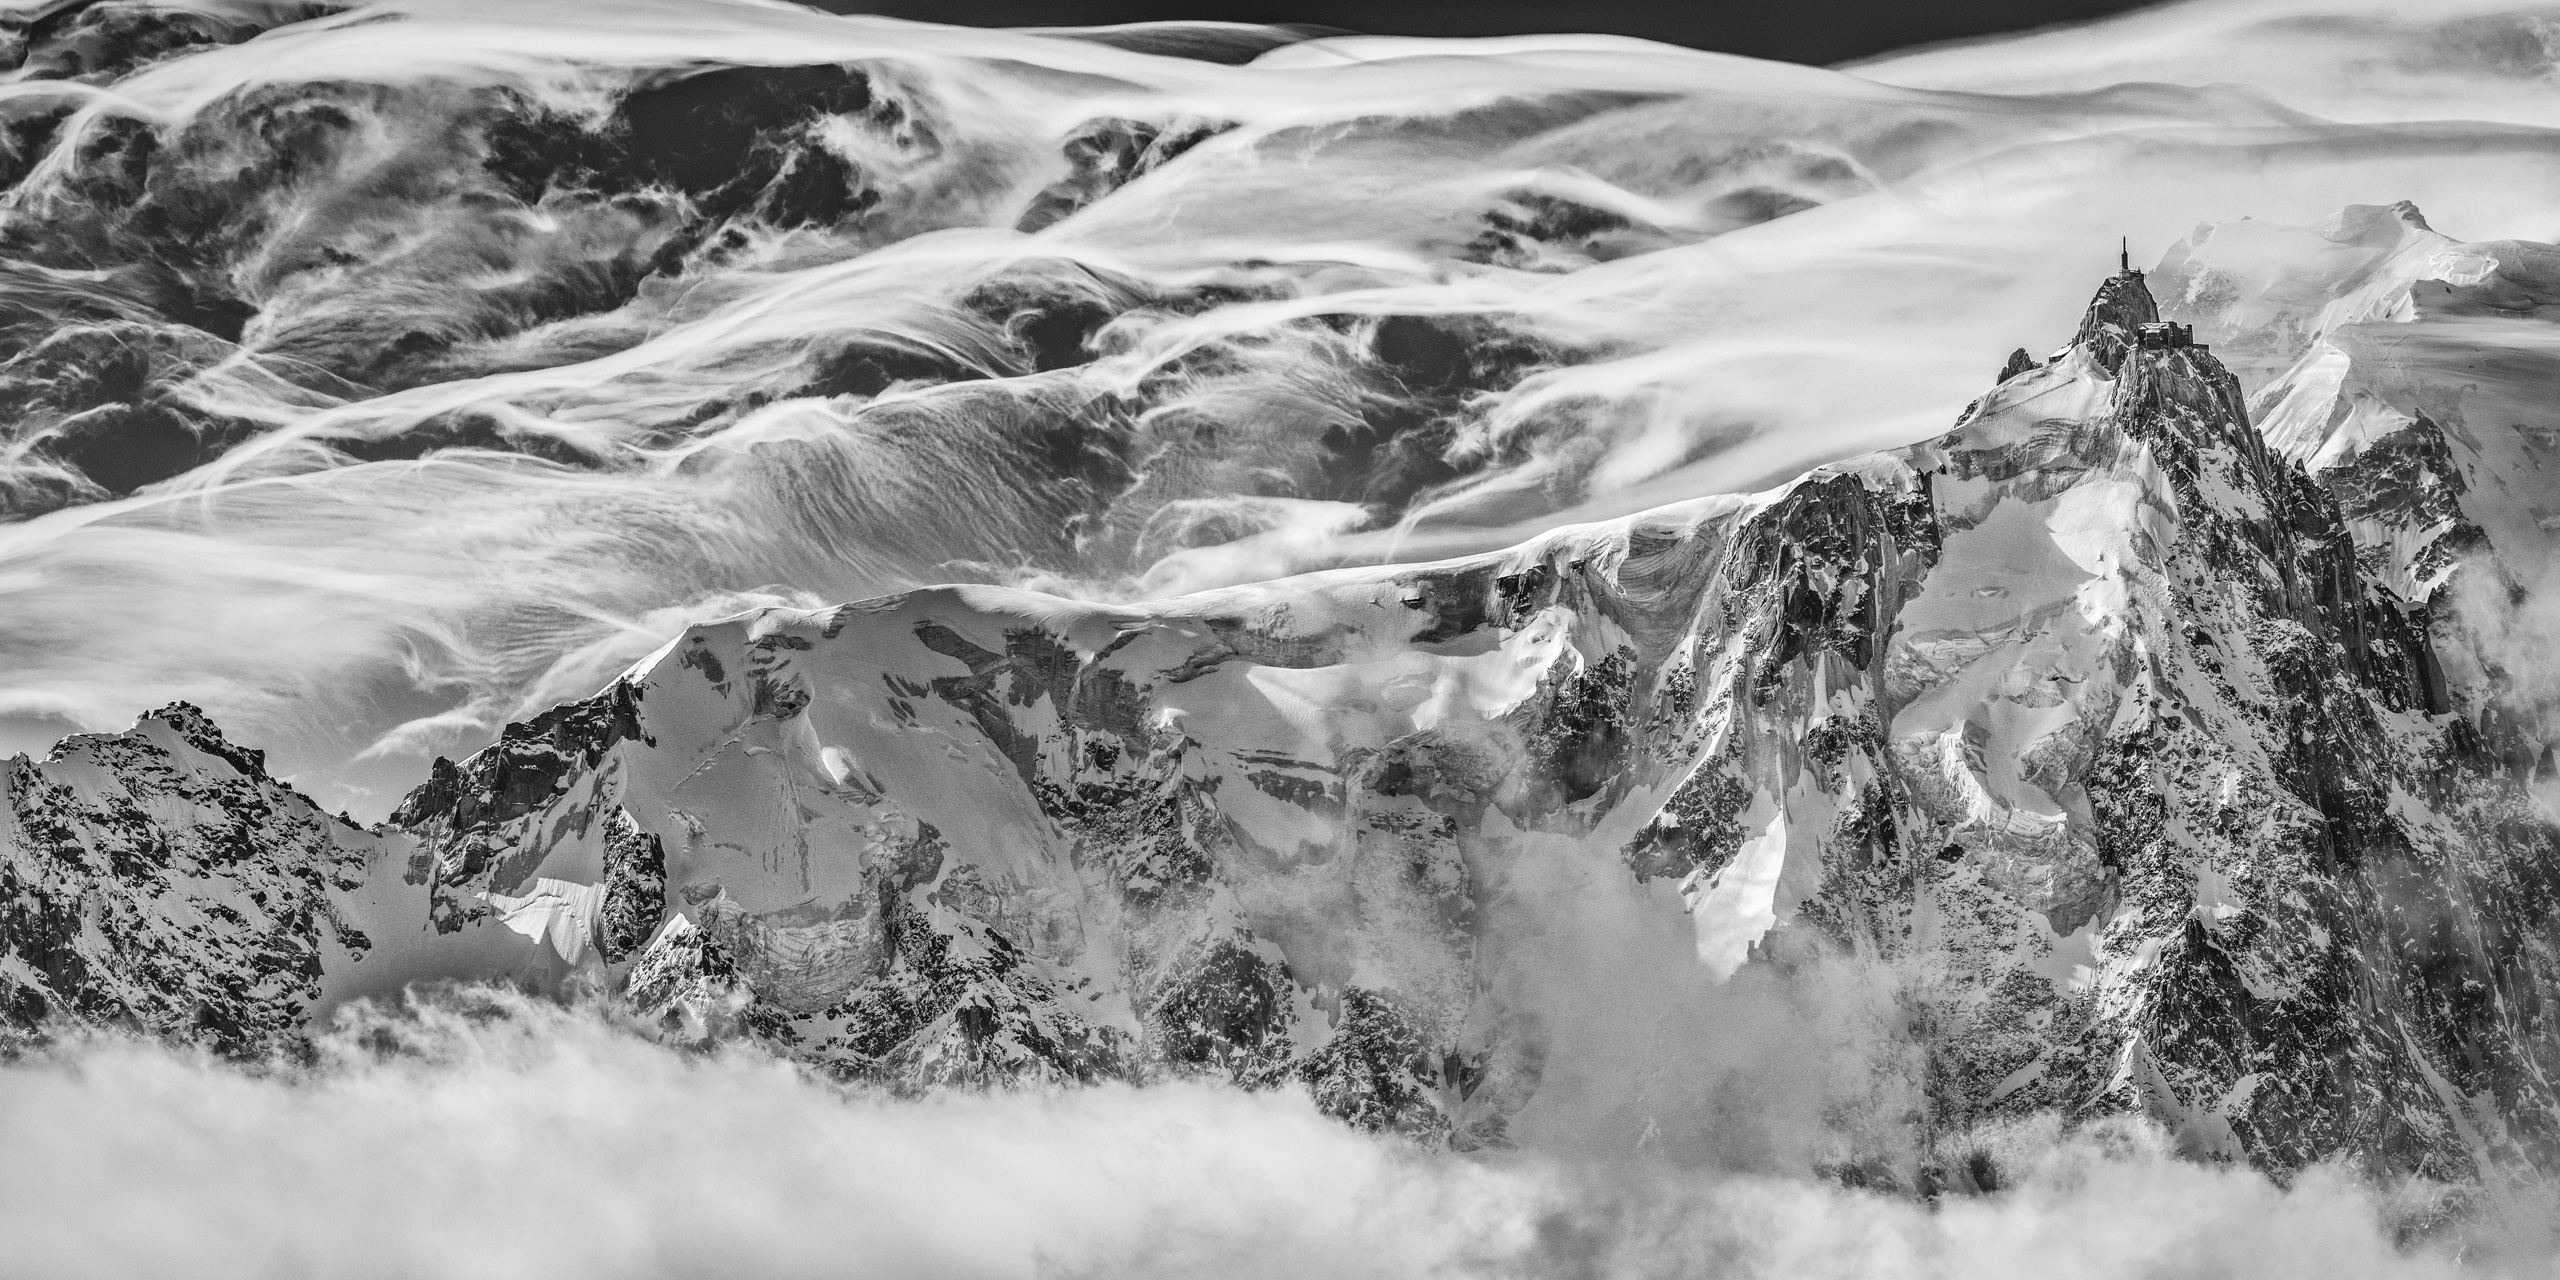 Chamonix - Panorama de montagne des massif rocheux et montagneux de l'Aiguille du Midi dans les nuages